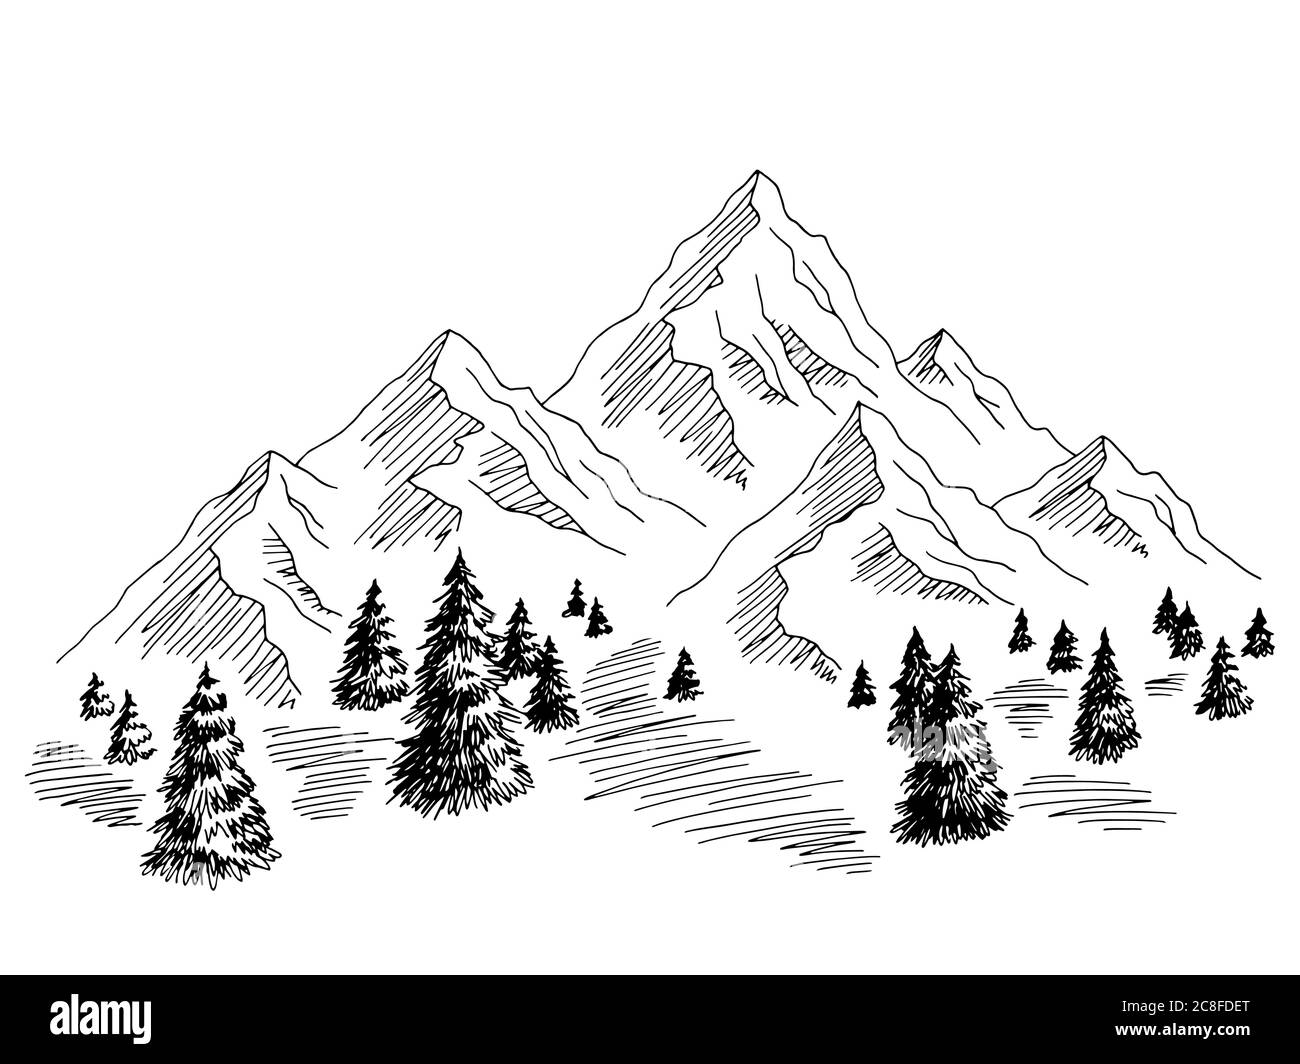 Berge Hügel Grafik schwarz weiß Landschaft Skizze Illustration Vektor Stock Vektor